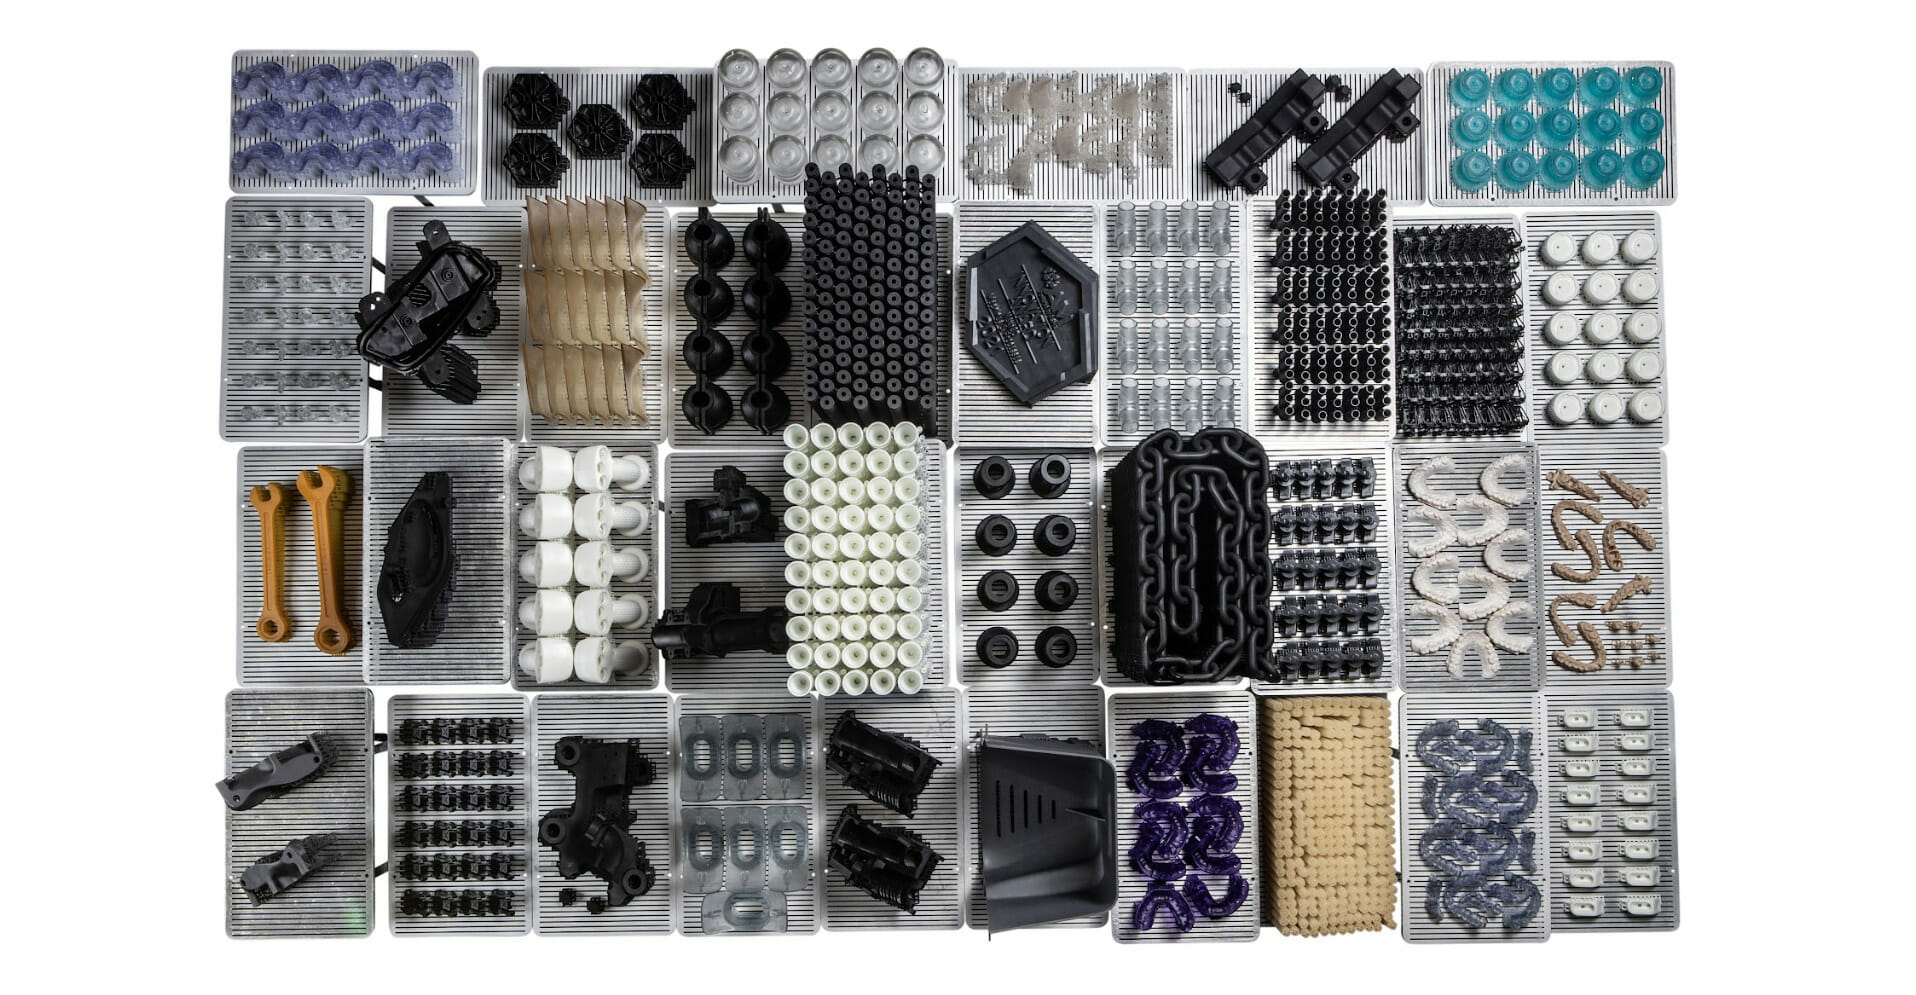 Nexa3D open material platform for 3D printer resins